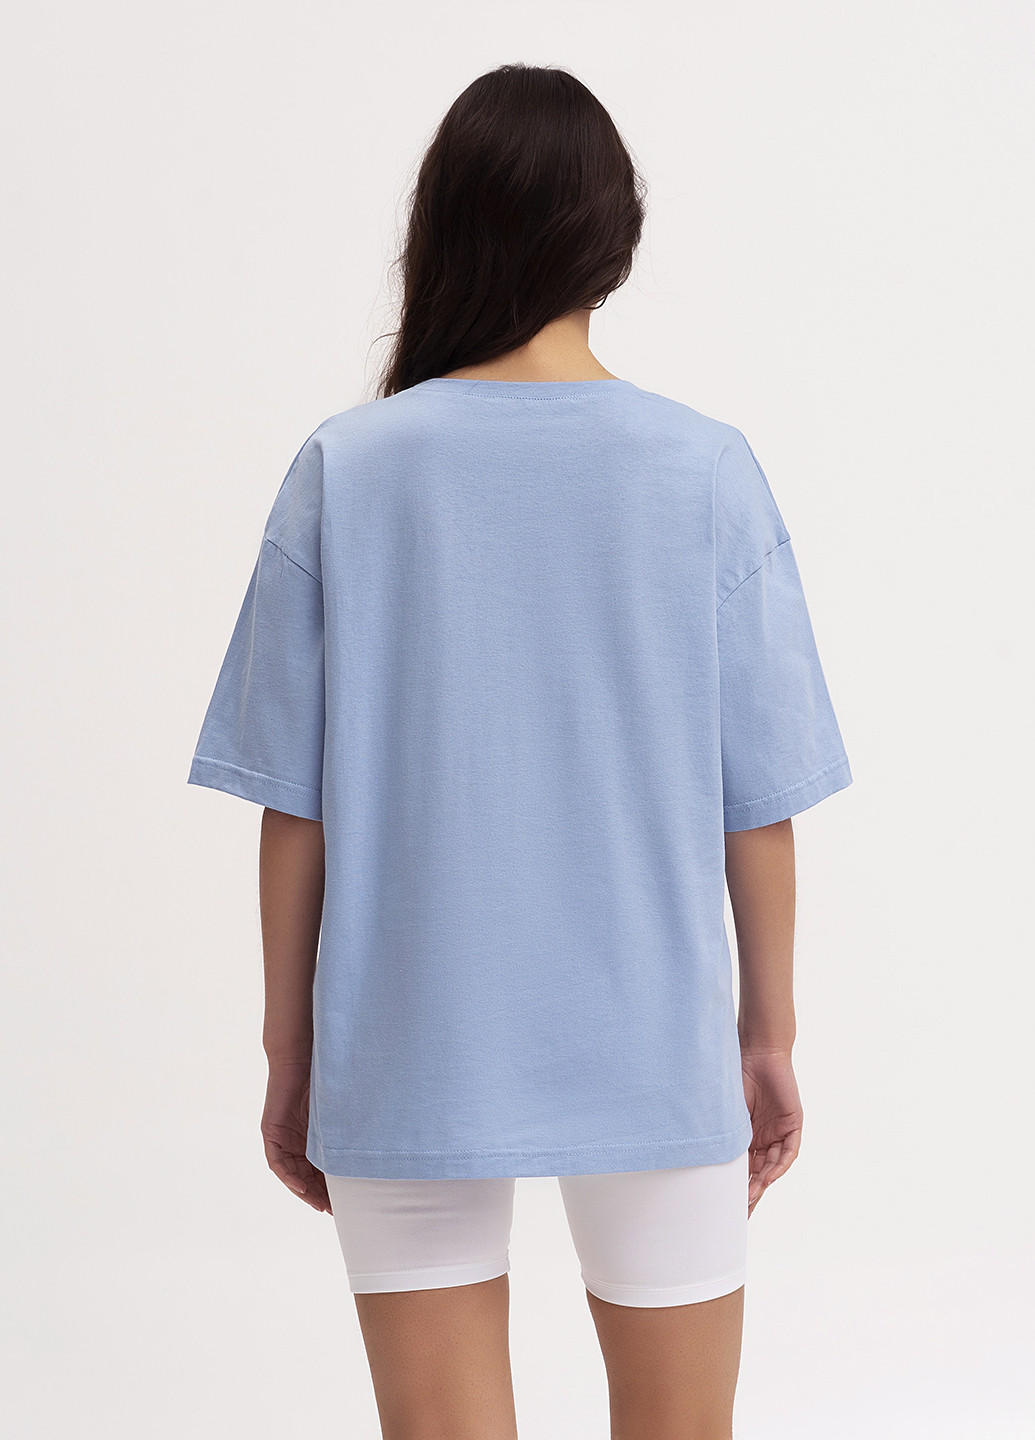 Голубая летняя футболка женская оверсайз KASTA design